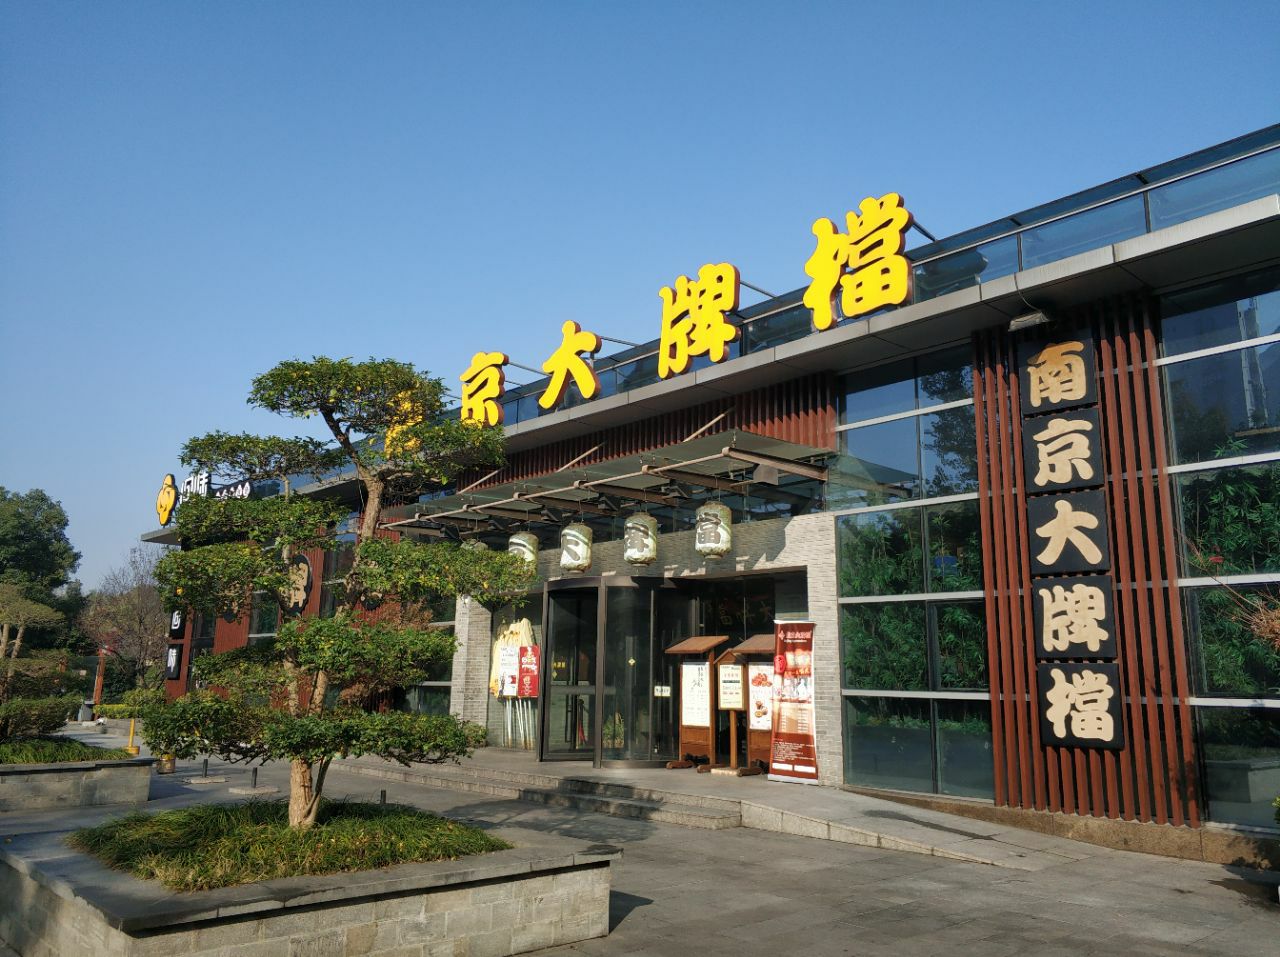 2023南京大牌档(中山陵店)美食餐厅,在等候巴士,应该说是环保车